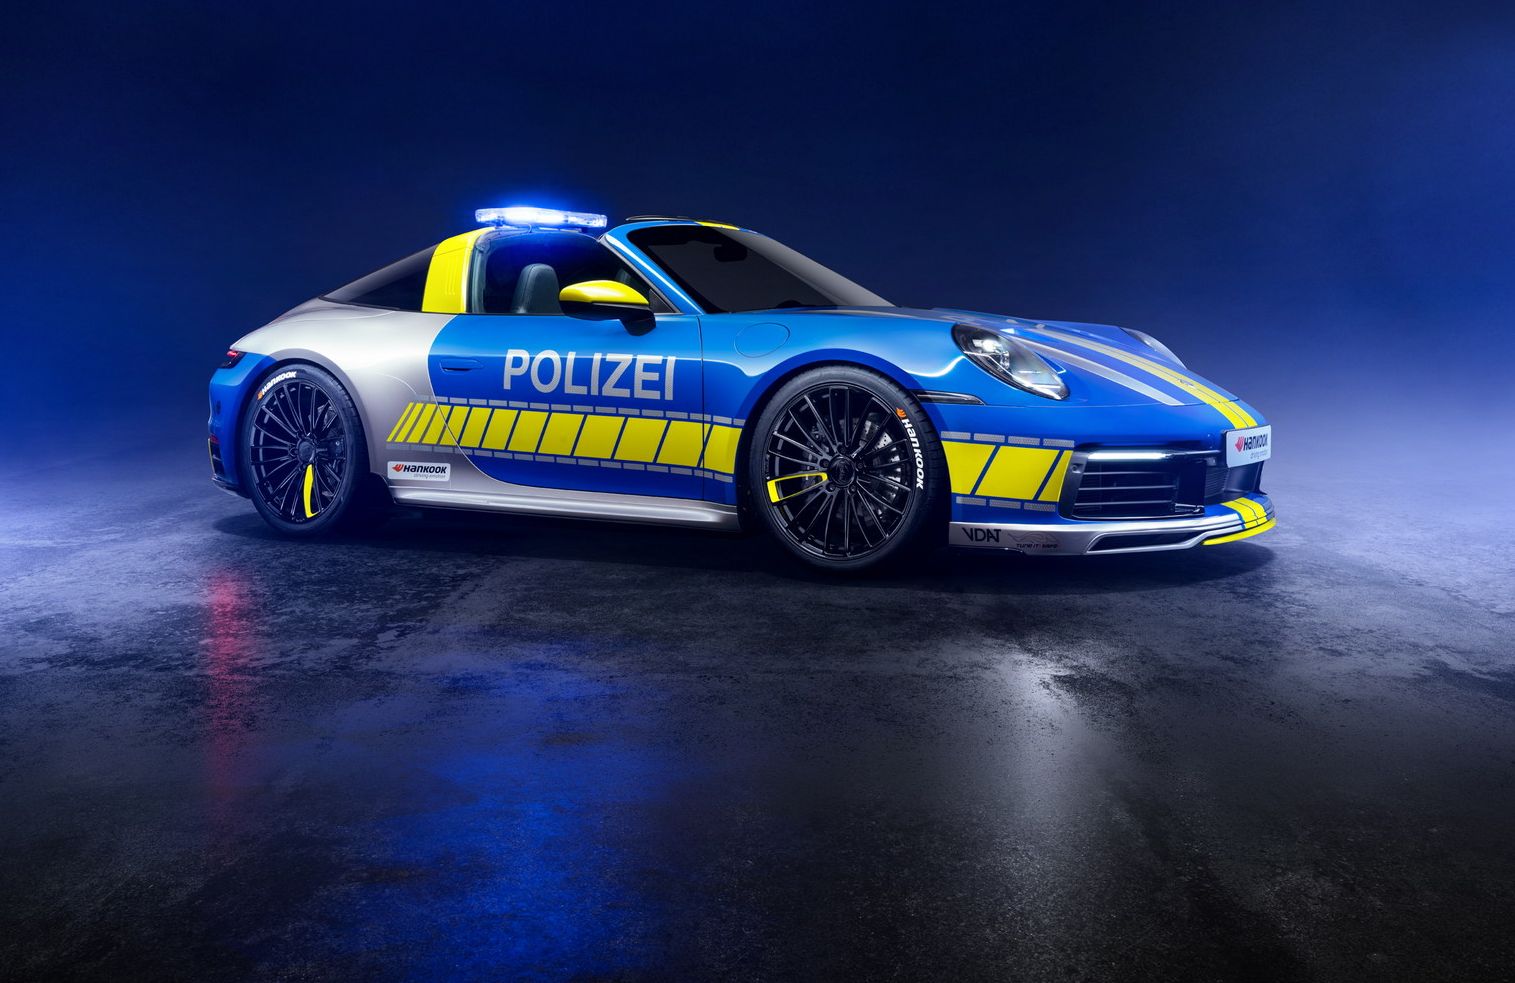 پورشه تیونینگ شده برای پلیس آلمان؛ پروژه تازه تک آرت براساس ۹۱۱ تارگا ۴